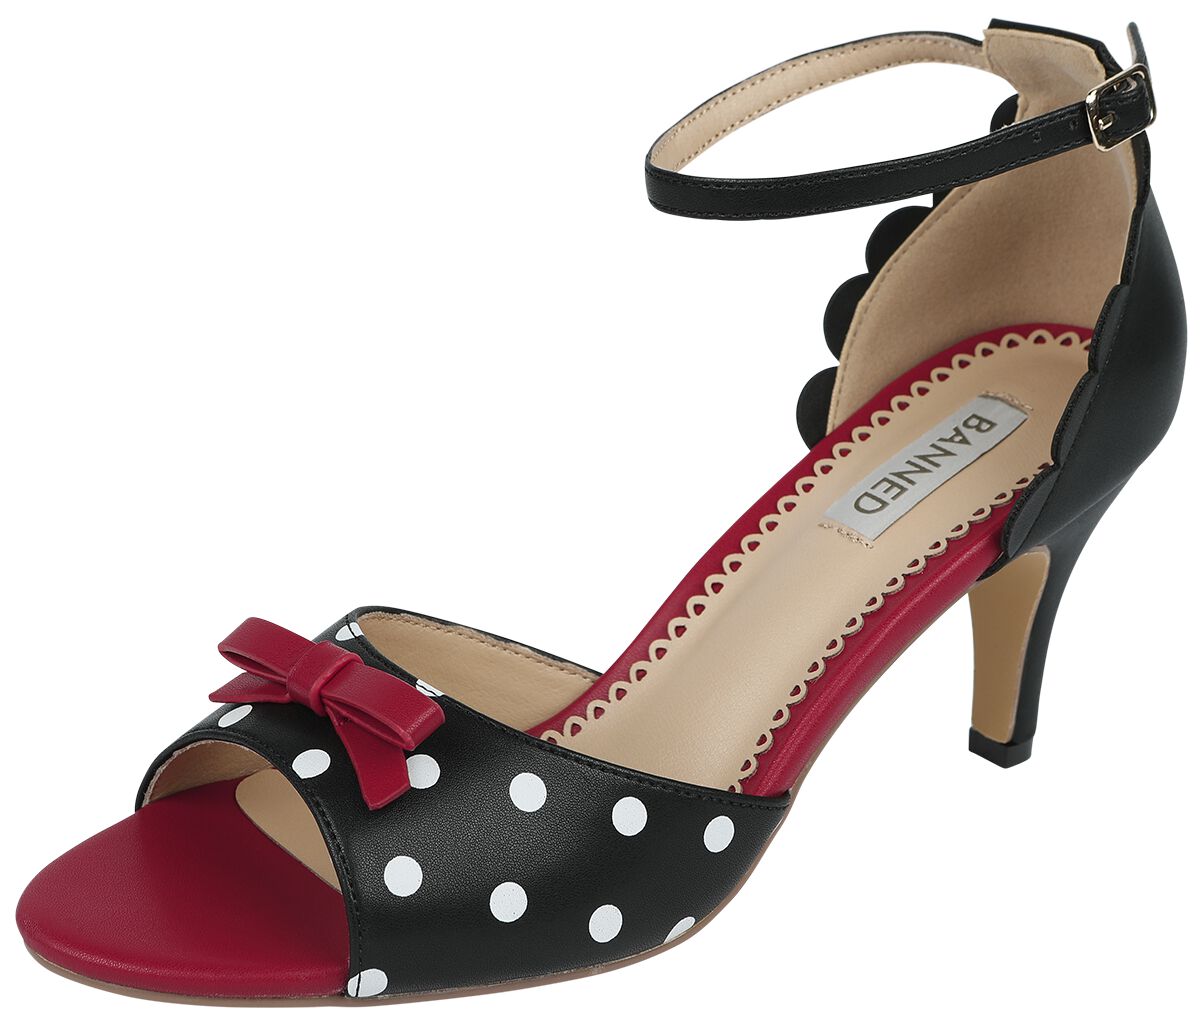 Banned Retro - Rockabilly High Heel - Poppy Polka Open Toe Sandals - EU36 bis EU41 - für Damen - Größe EU39 - schwarz/rot